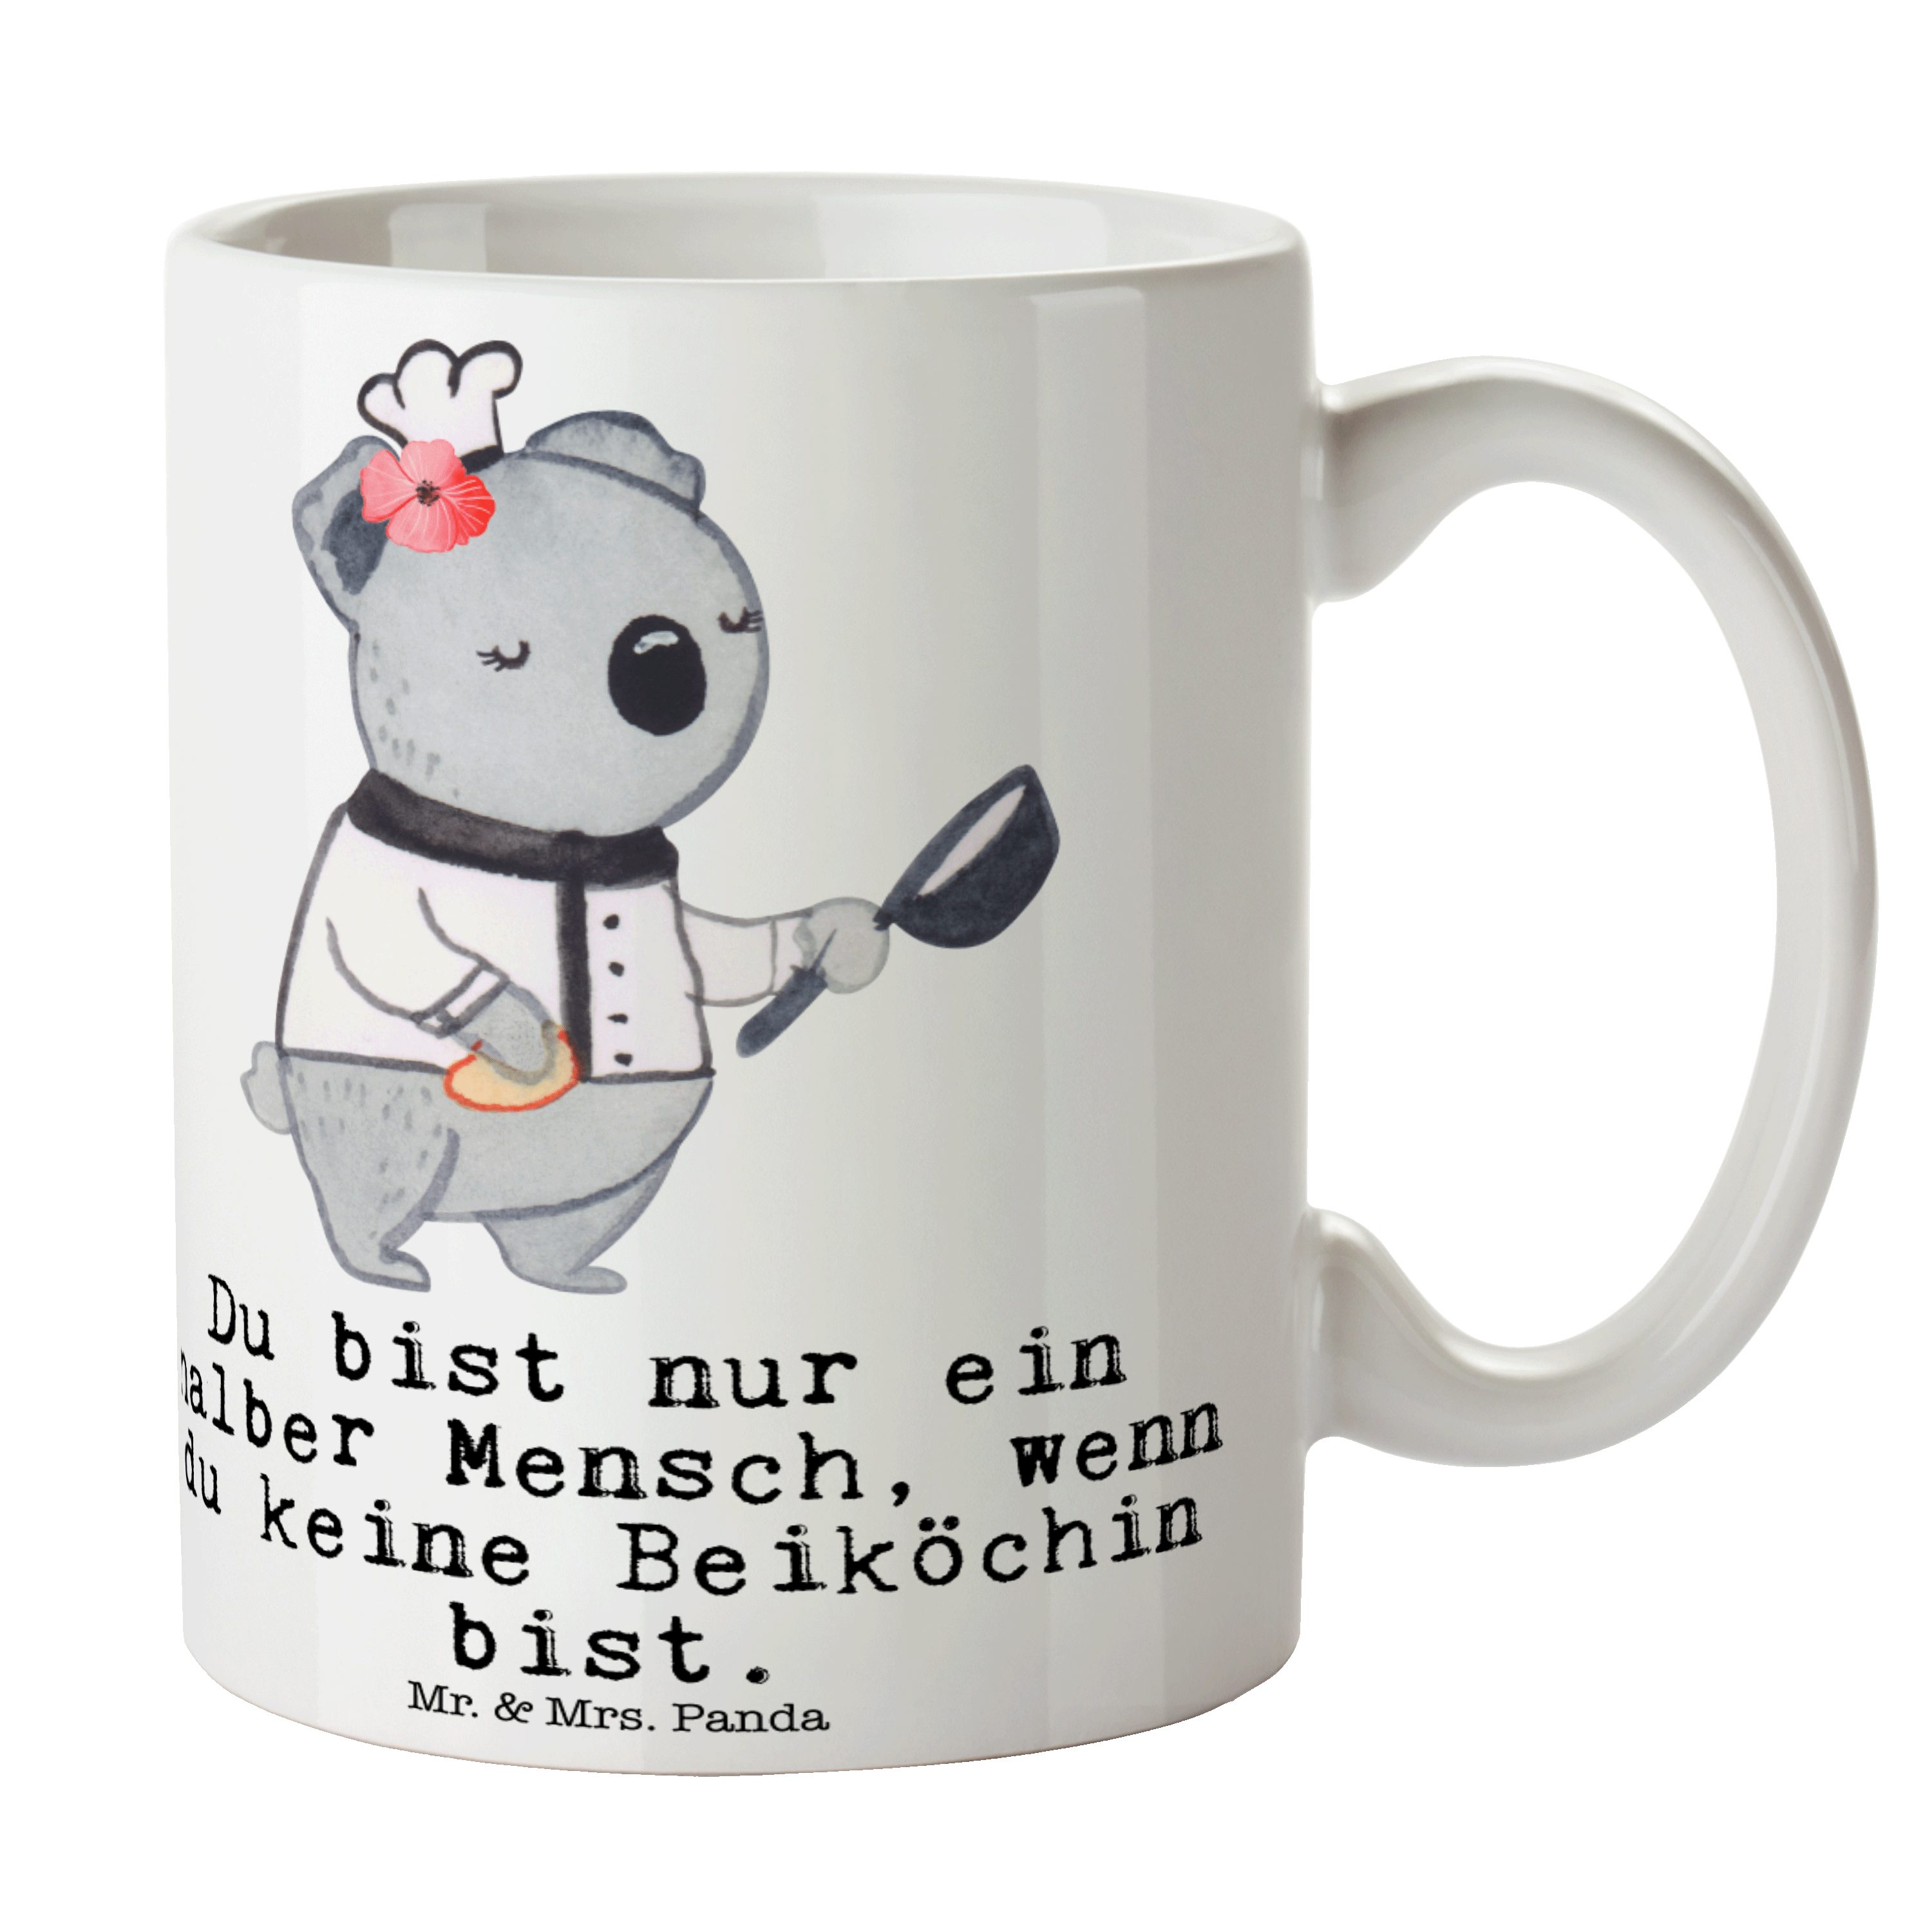 Mr. & Mrs. Panda Tasse Beiköchin mit Herz - Weiß - Geschenk, Hilfsköchin, Jungkoch, Porzella, Keramik